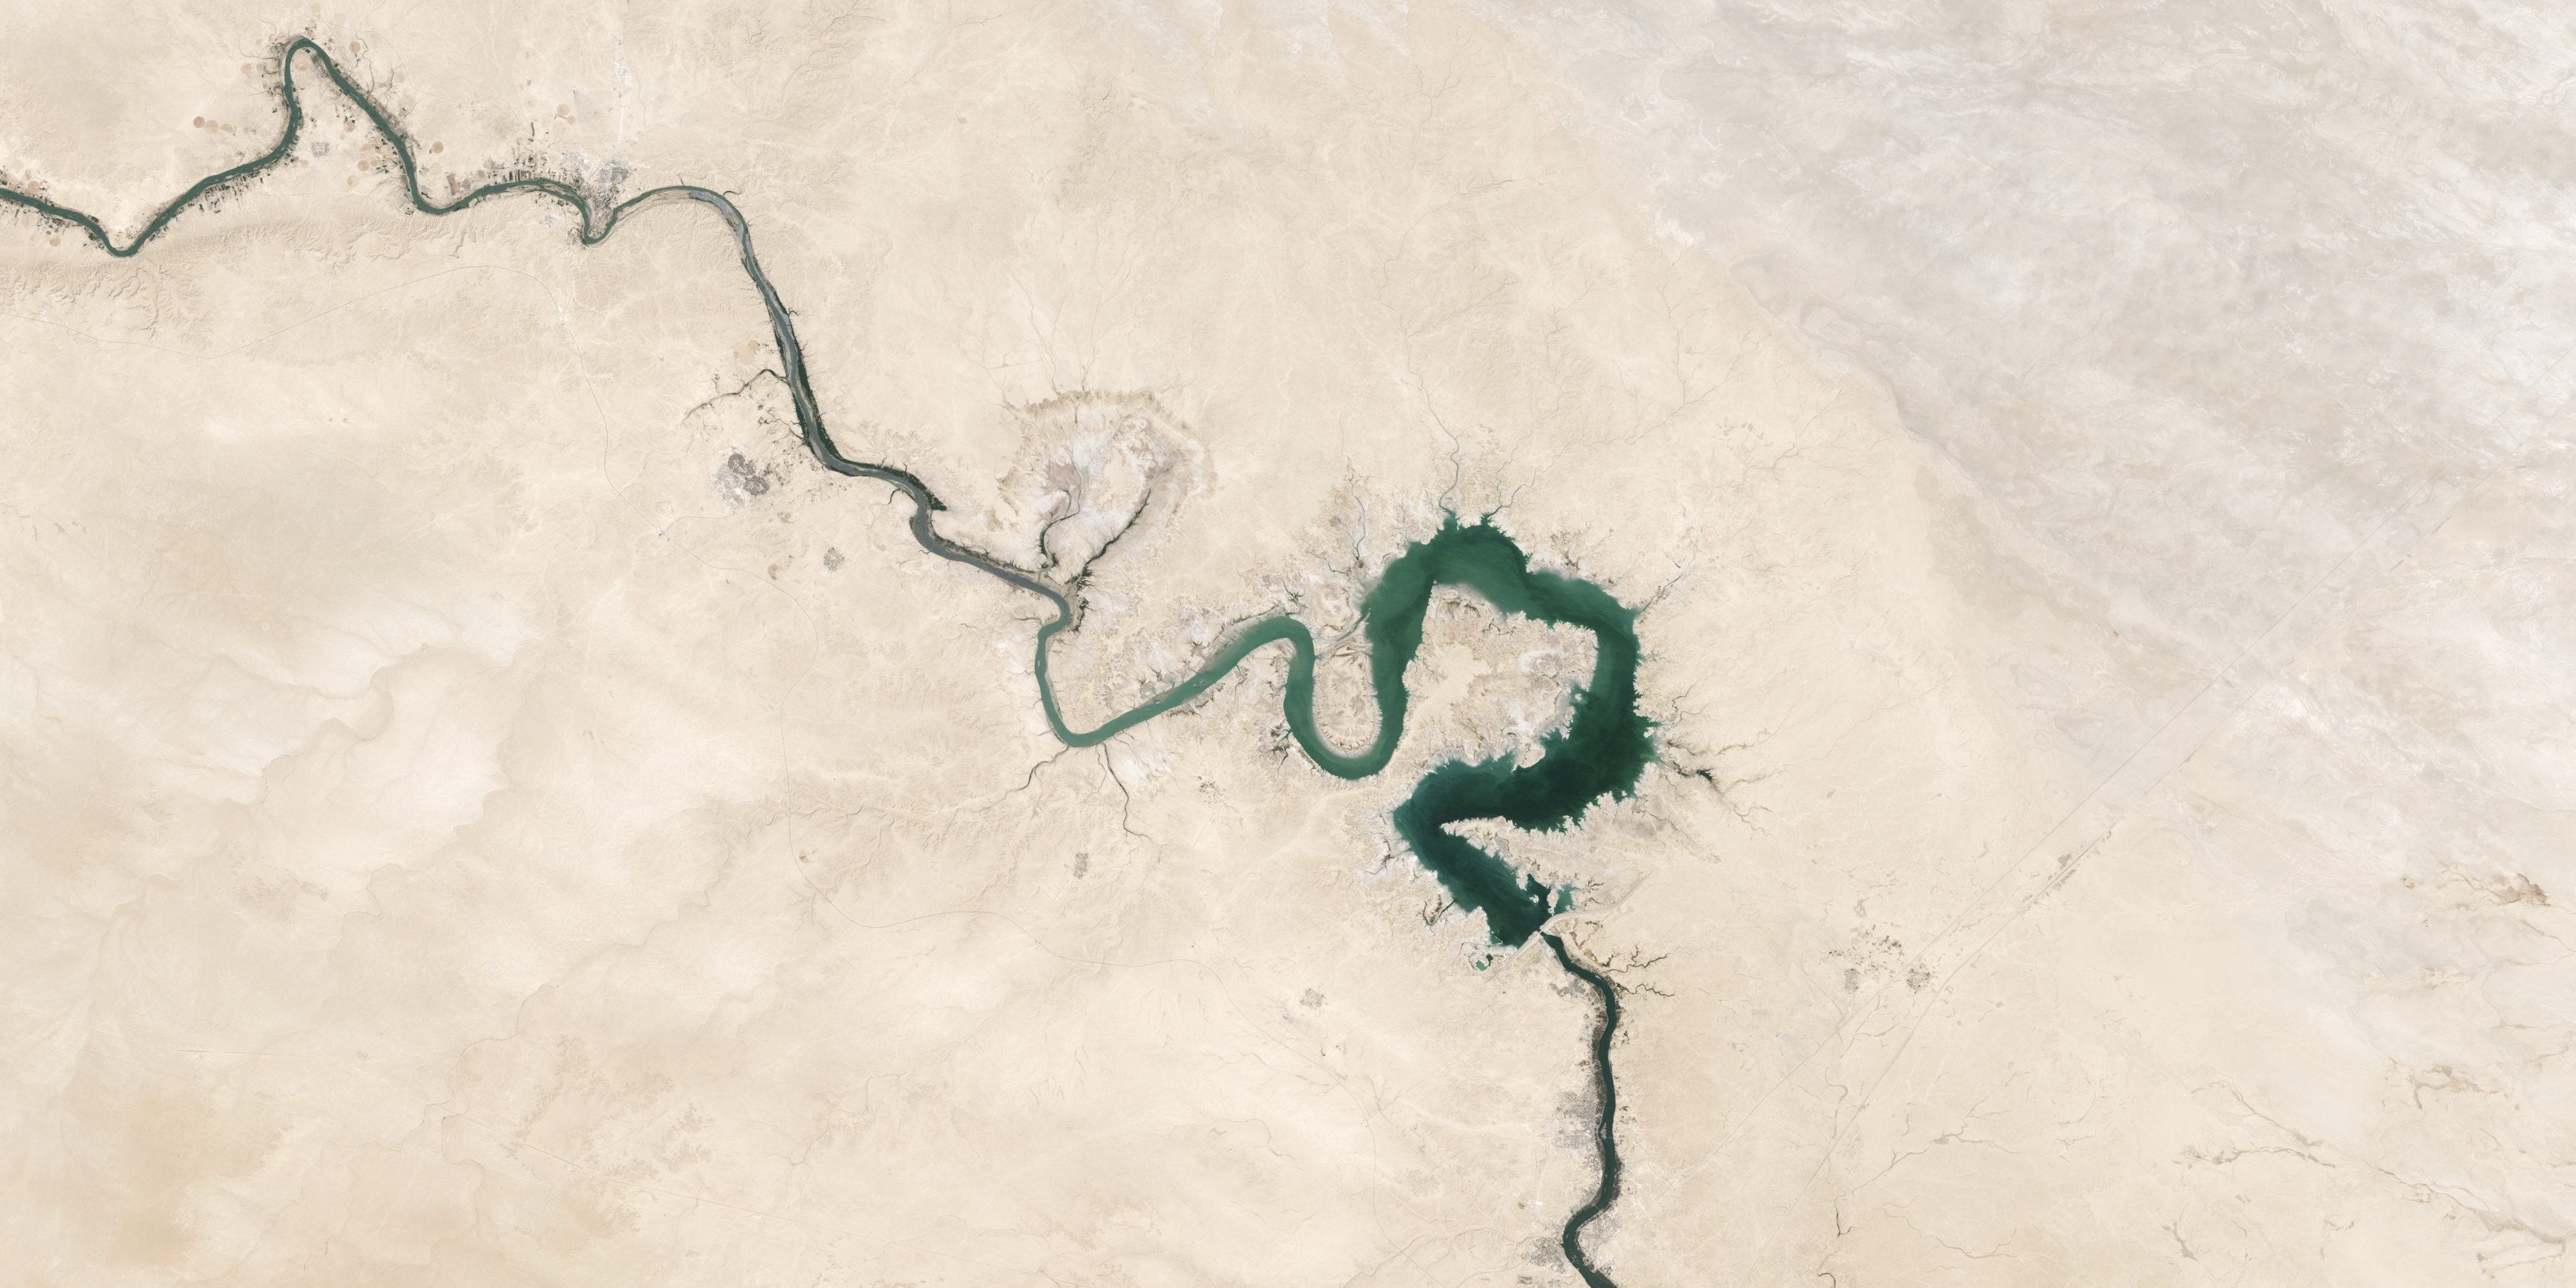 Luftaufnahme eines kurvenreichen Flusses in einer trockenen Umgebung